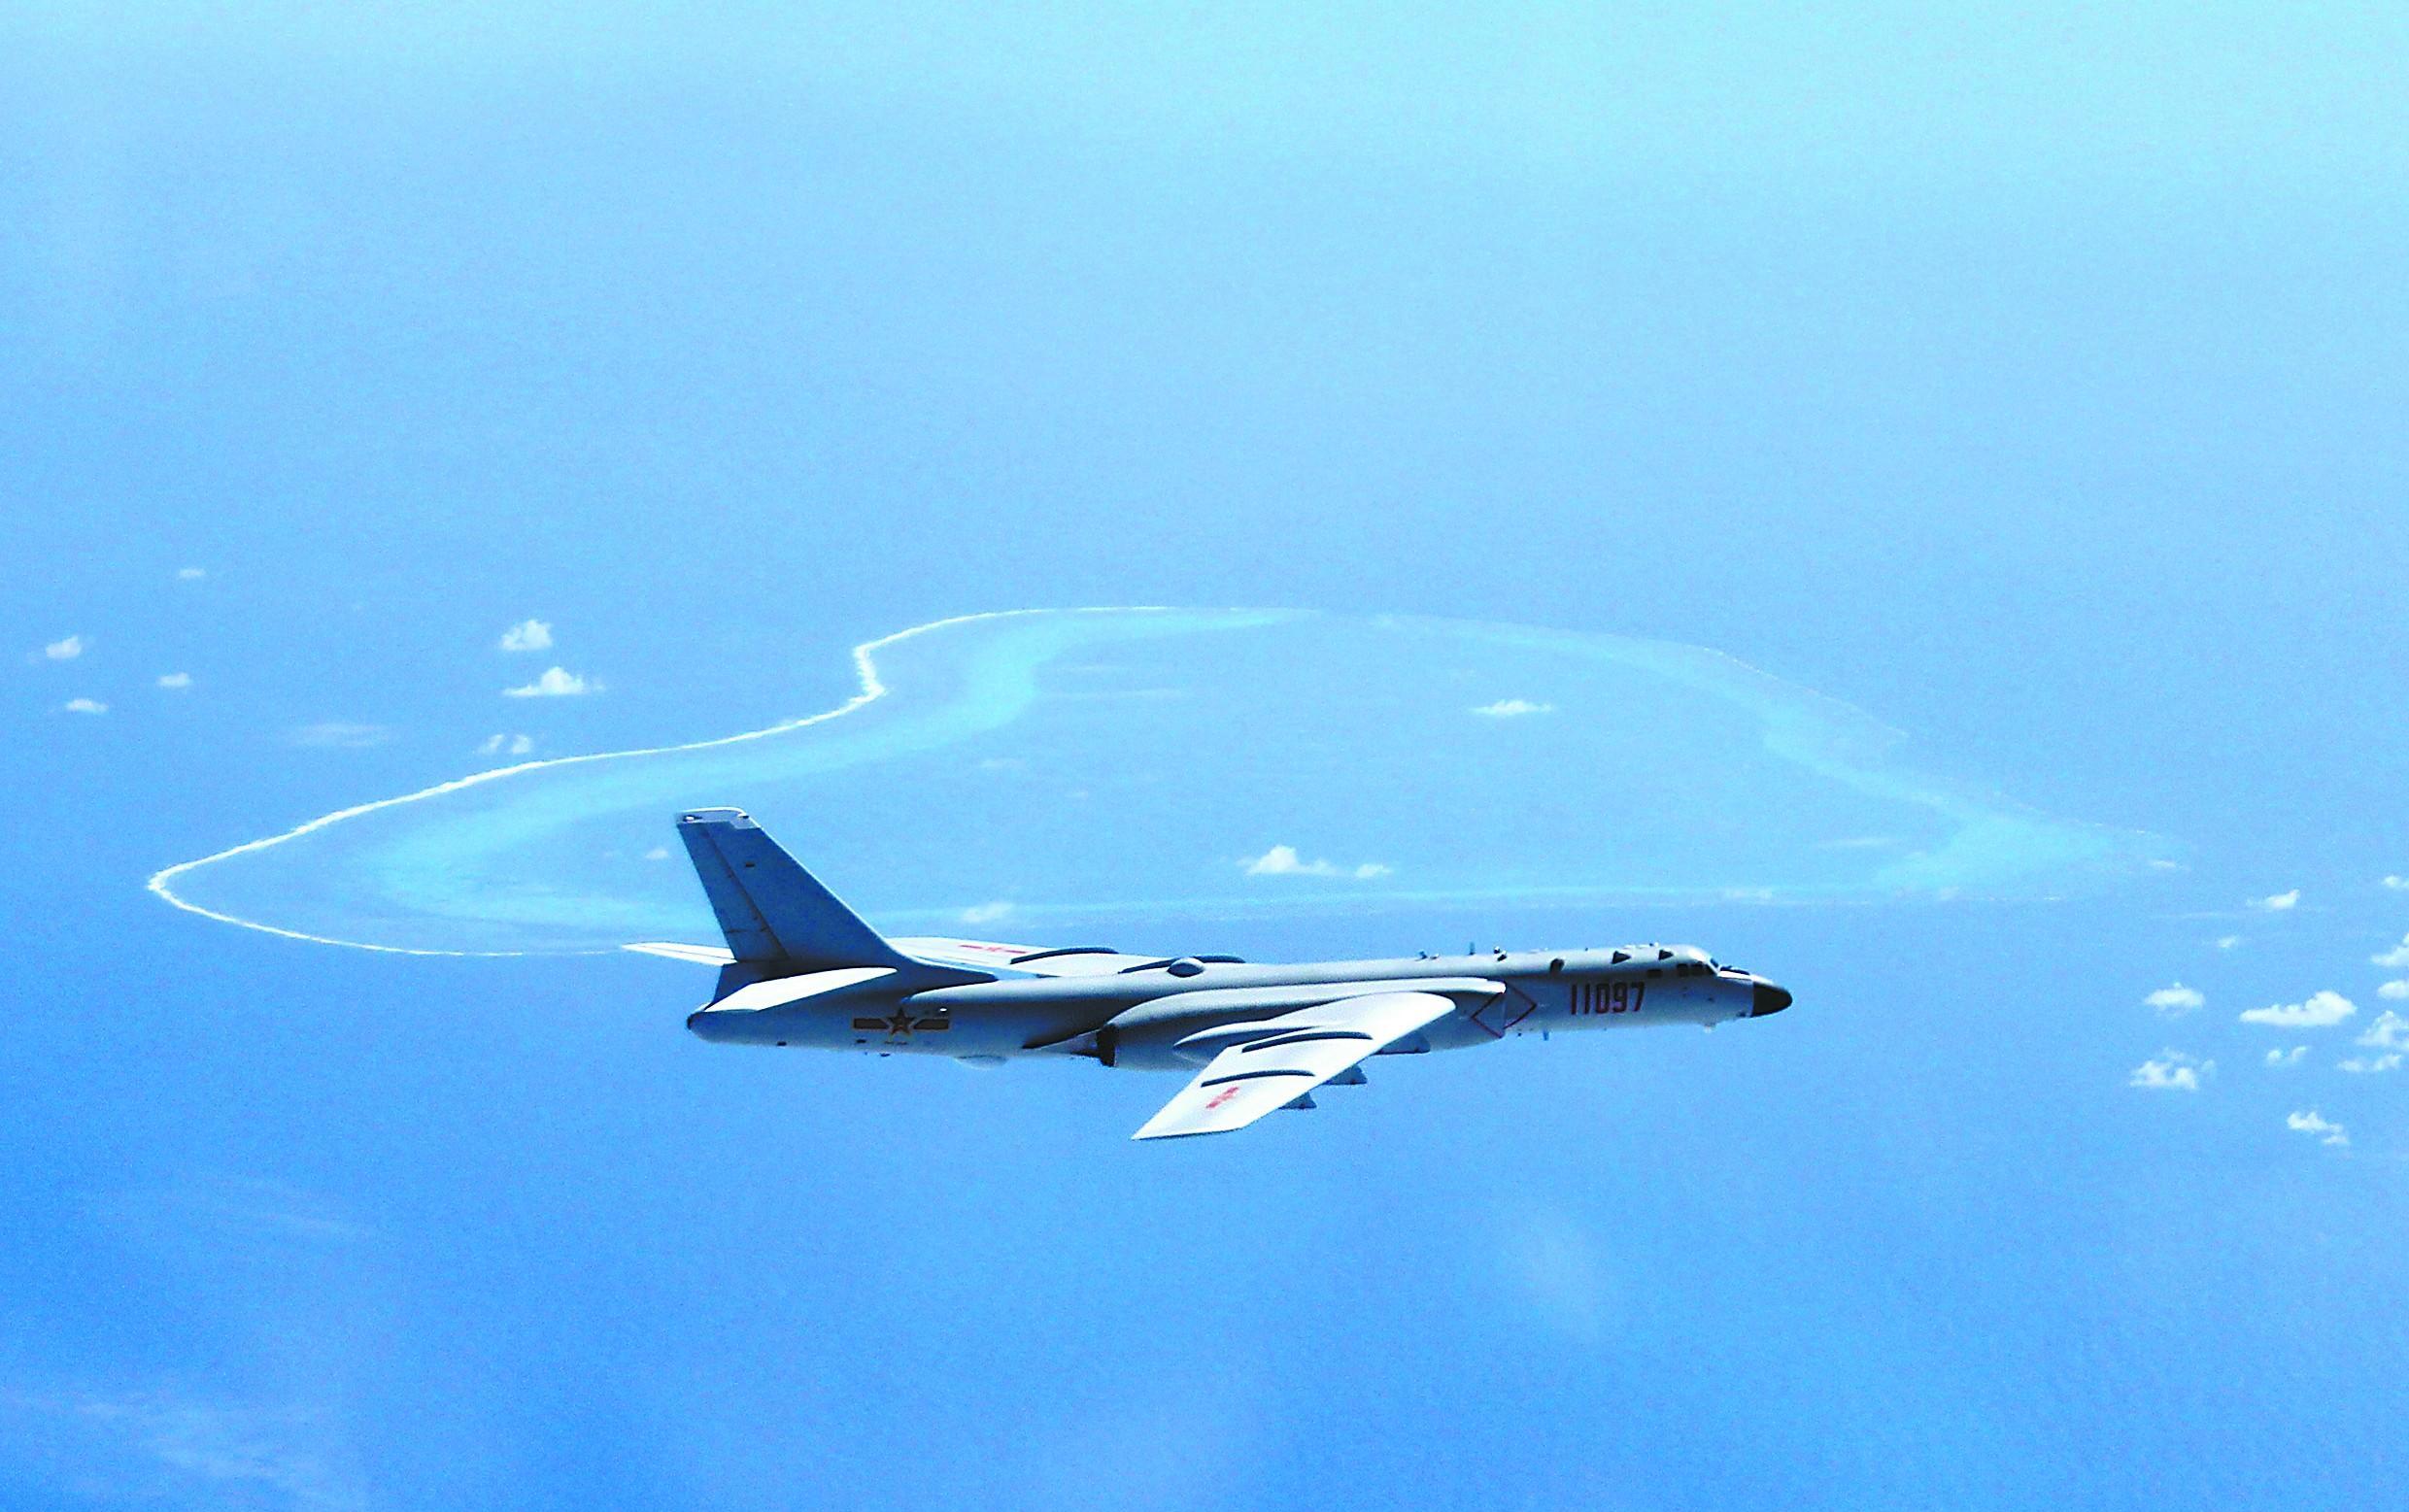 中国空军巡航黄岩岛将成常态 菲媒:中国秀肌肉